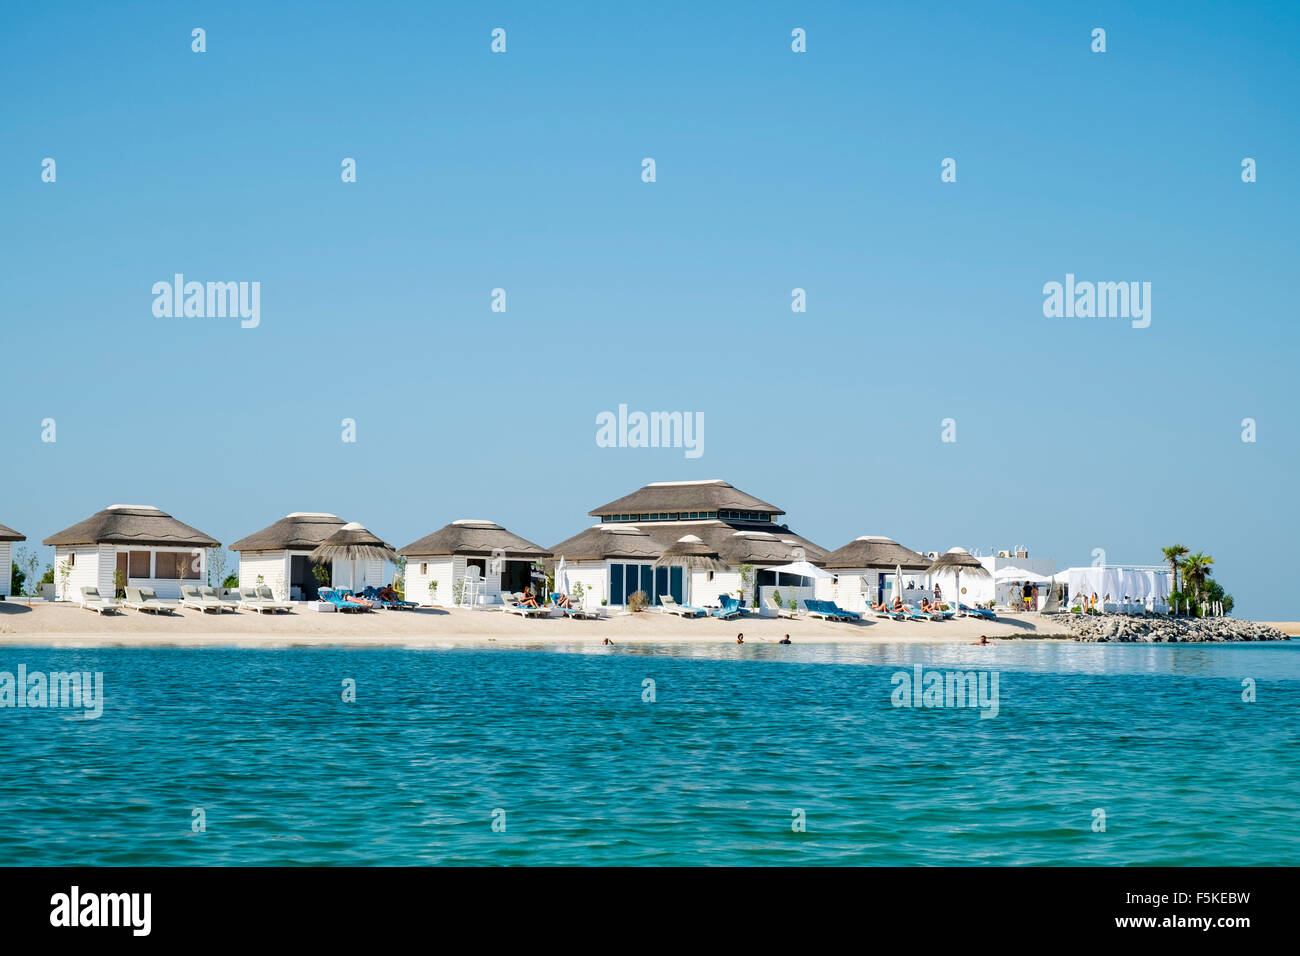 Vue sur l'Île Liban beach resort sur l'île, un homme fait partie du monde au large de la côte de Dubaï en Émirats Arabes Unis Banque D'Images